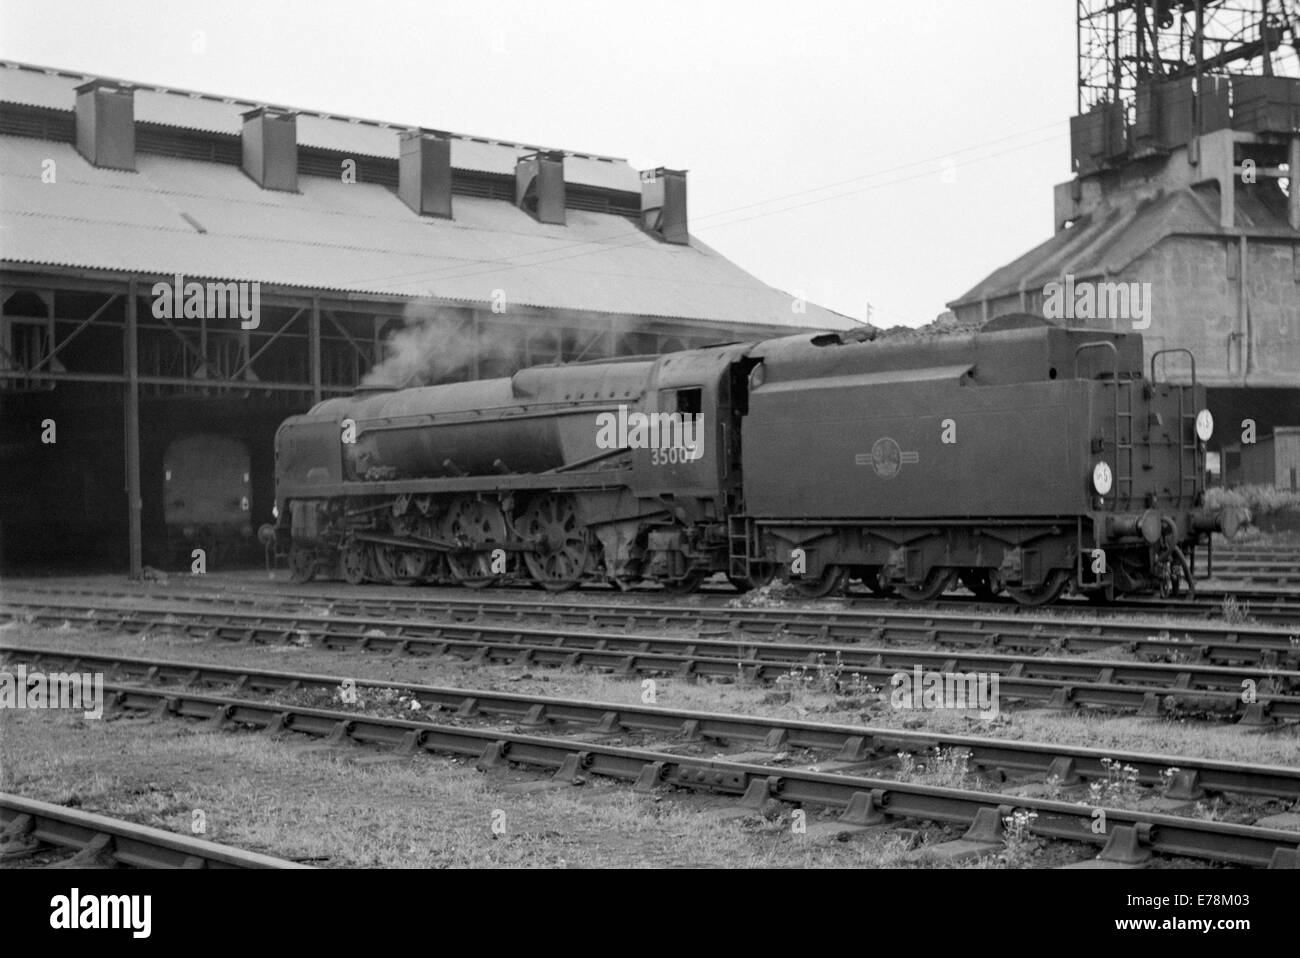 Originale il treno a vapore della marina mercantile 35007 classe aberdeen commonwealth operanti su ferrovie britanniche durante gli anni sessanta Foto Stock